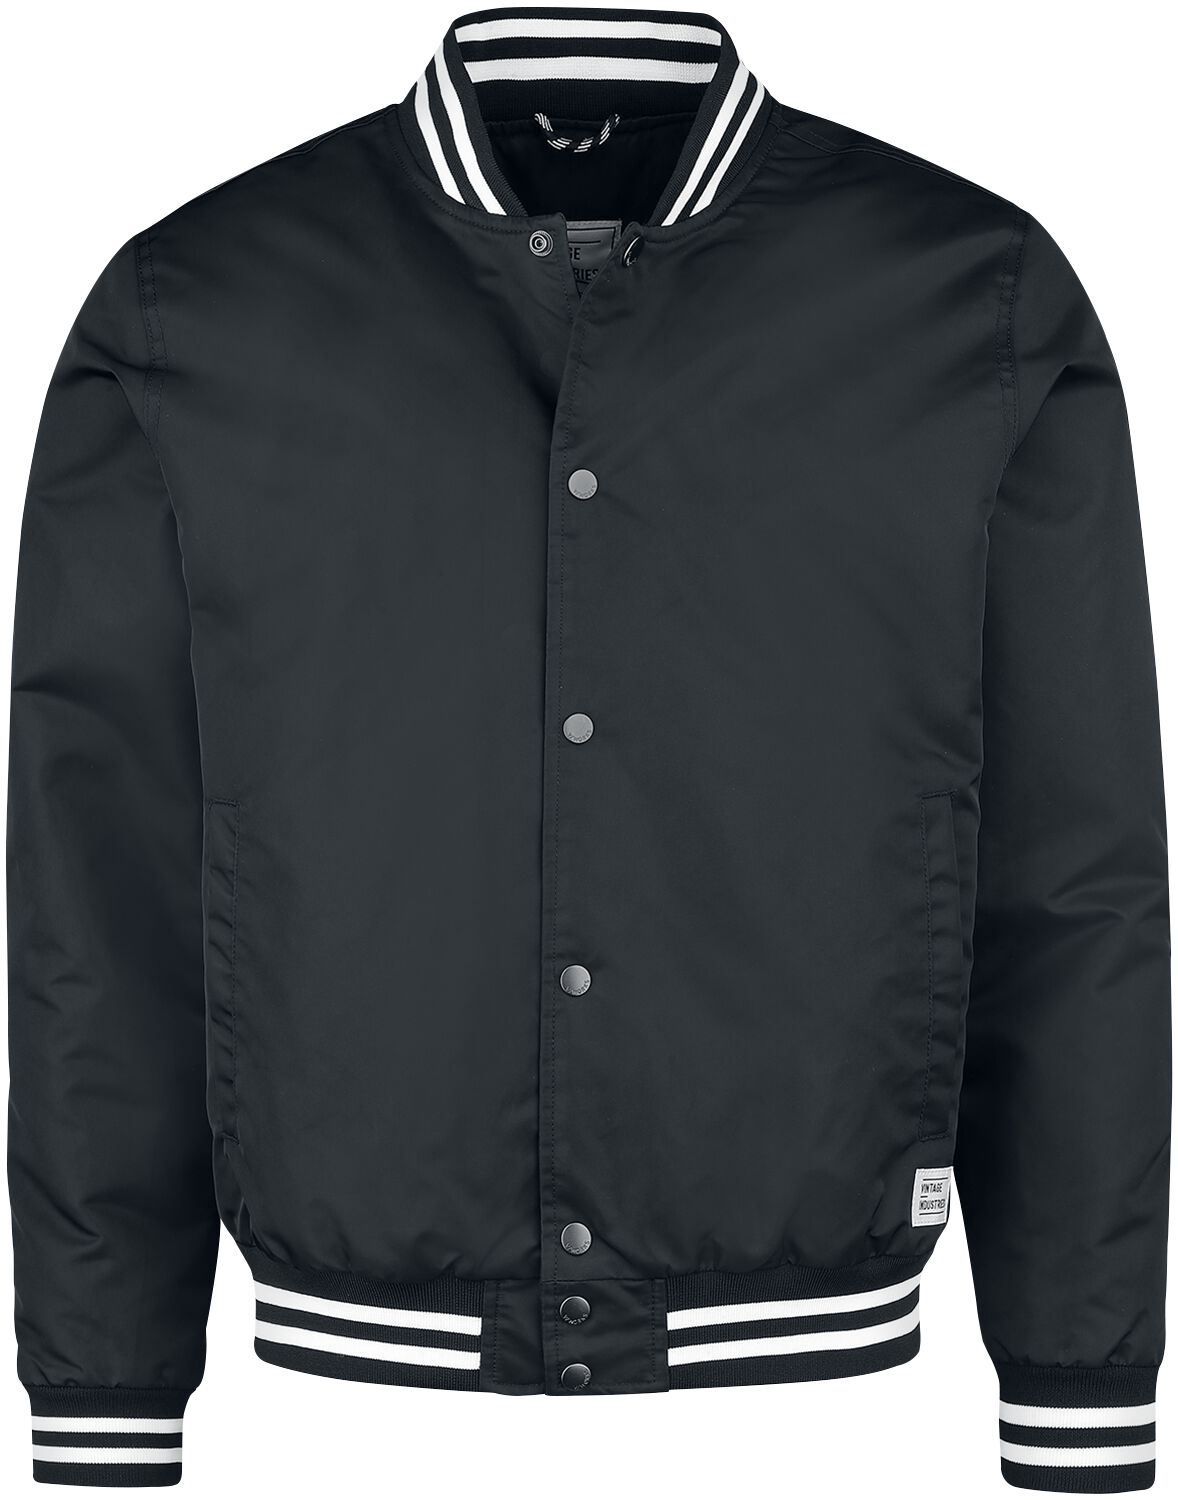 Vintage Industries Übergangsjacke - Chapman Jacket - M bis XXL - für Männer - Größe XXL - schwarz